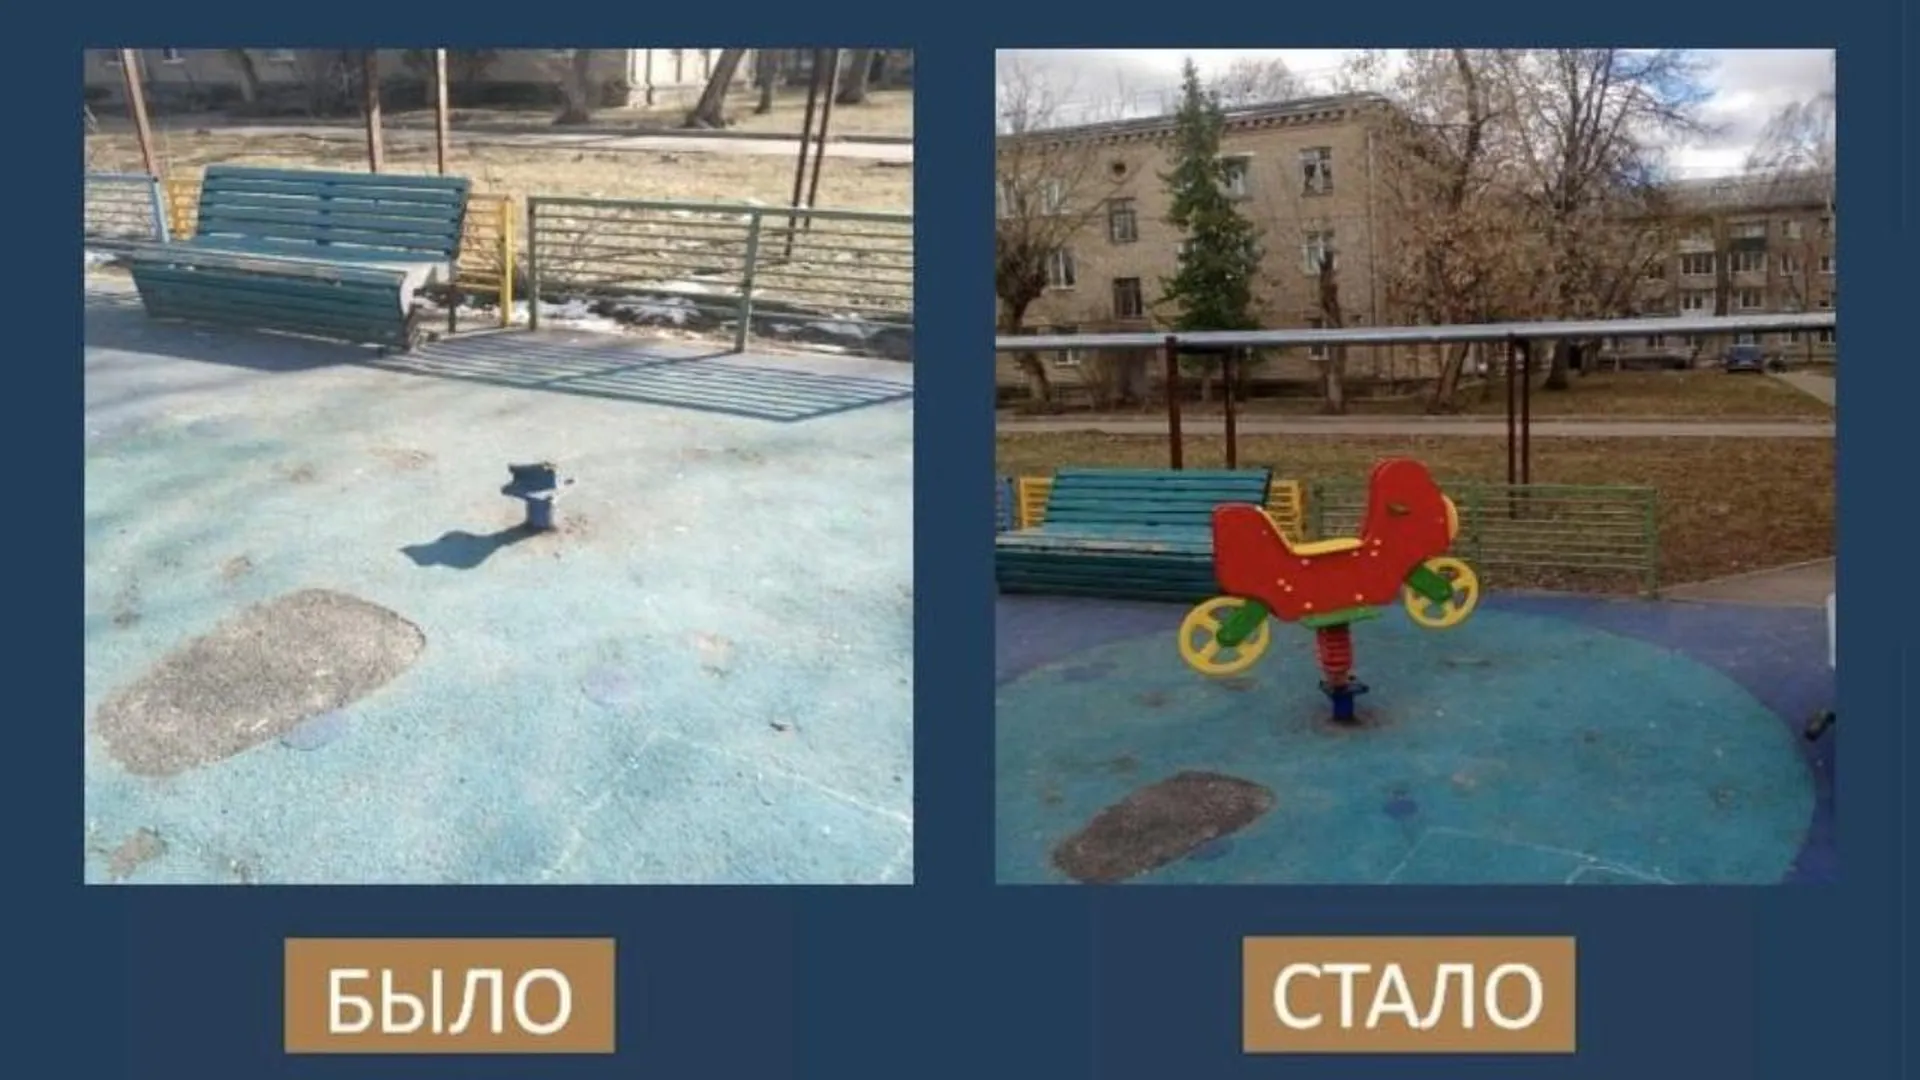 Более 1,7 тысячи недочетов в содержании детских площадок устранили в Подмосковье с начала месяца